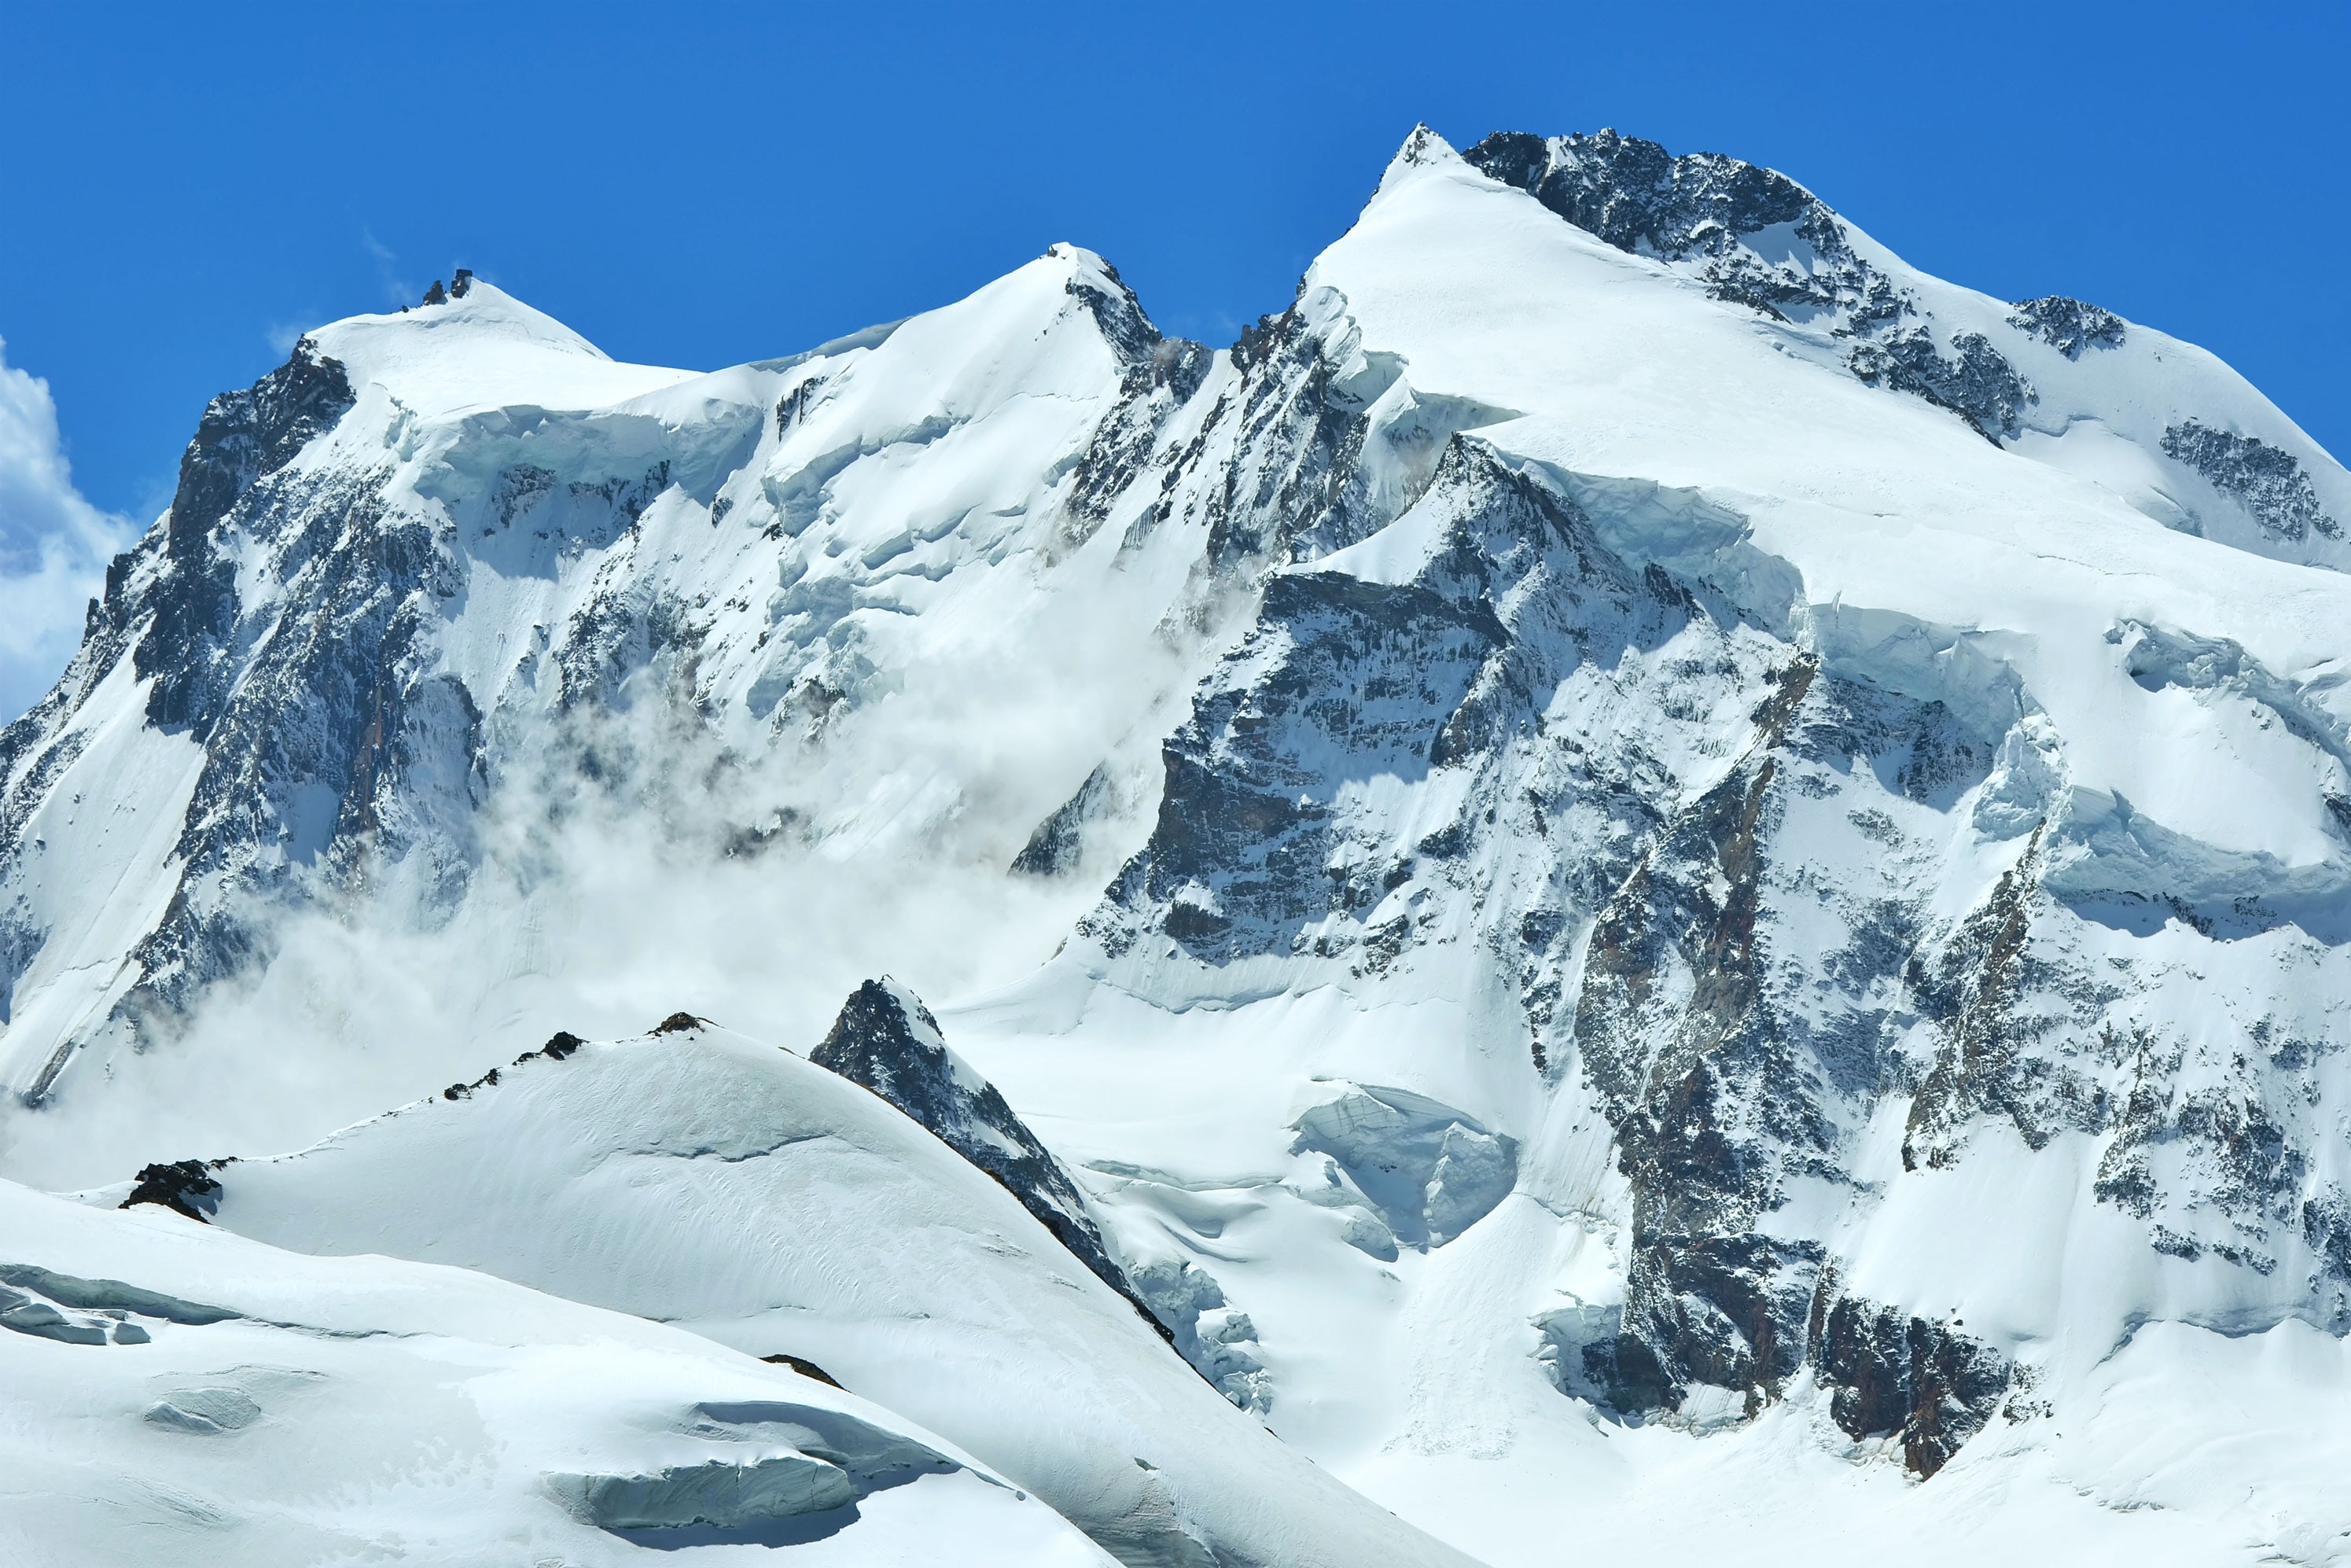 Monte-Rosa-Massiv: Signalkuppe mit Margheritahütte, Zumsteinspitze, Jagerhorn, Dufourspitze und Nordend